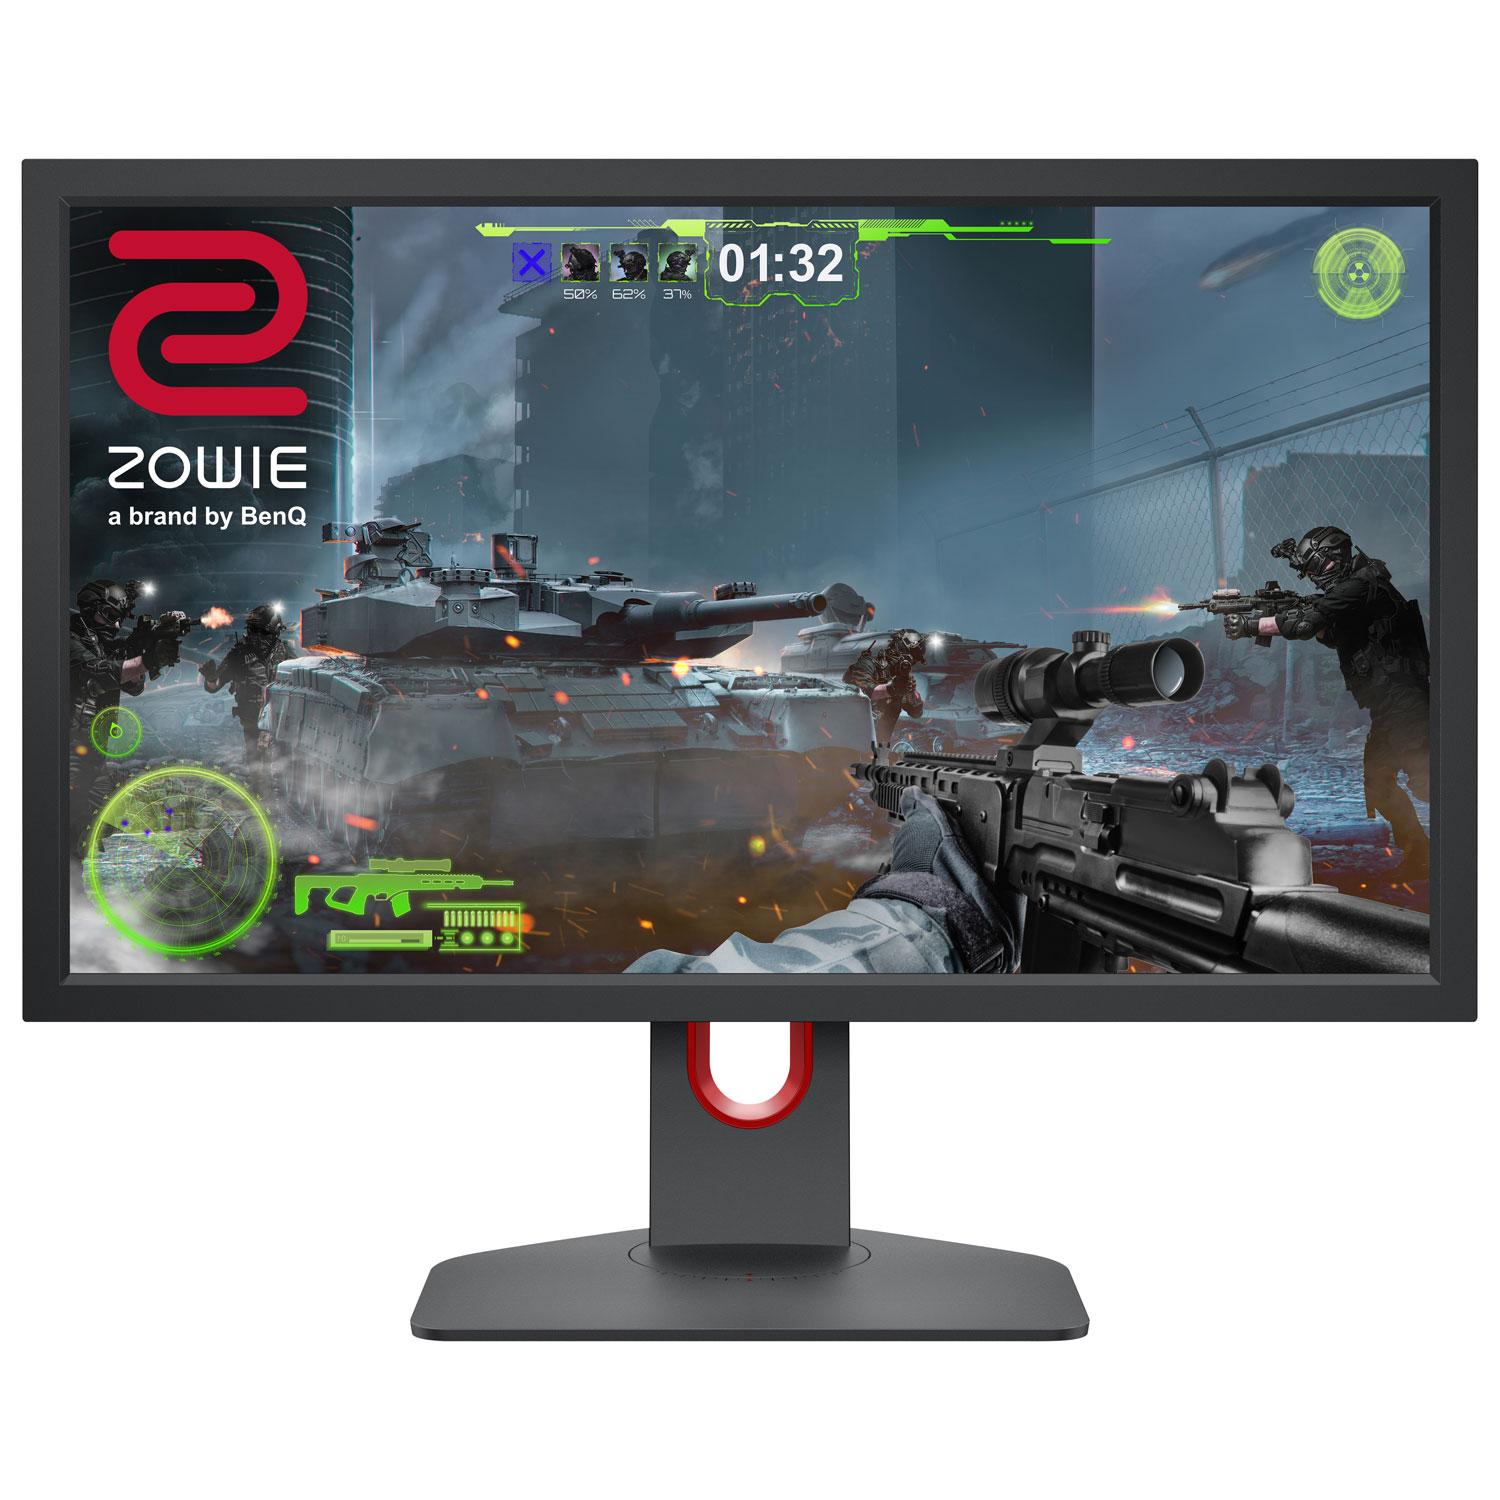 BenQ ZOWIE 24" FHD 144Hz 1ms GTG TN LED Gaming Monitor (XL2411K) - Dark Grey